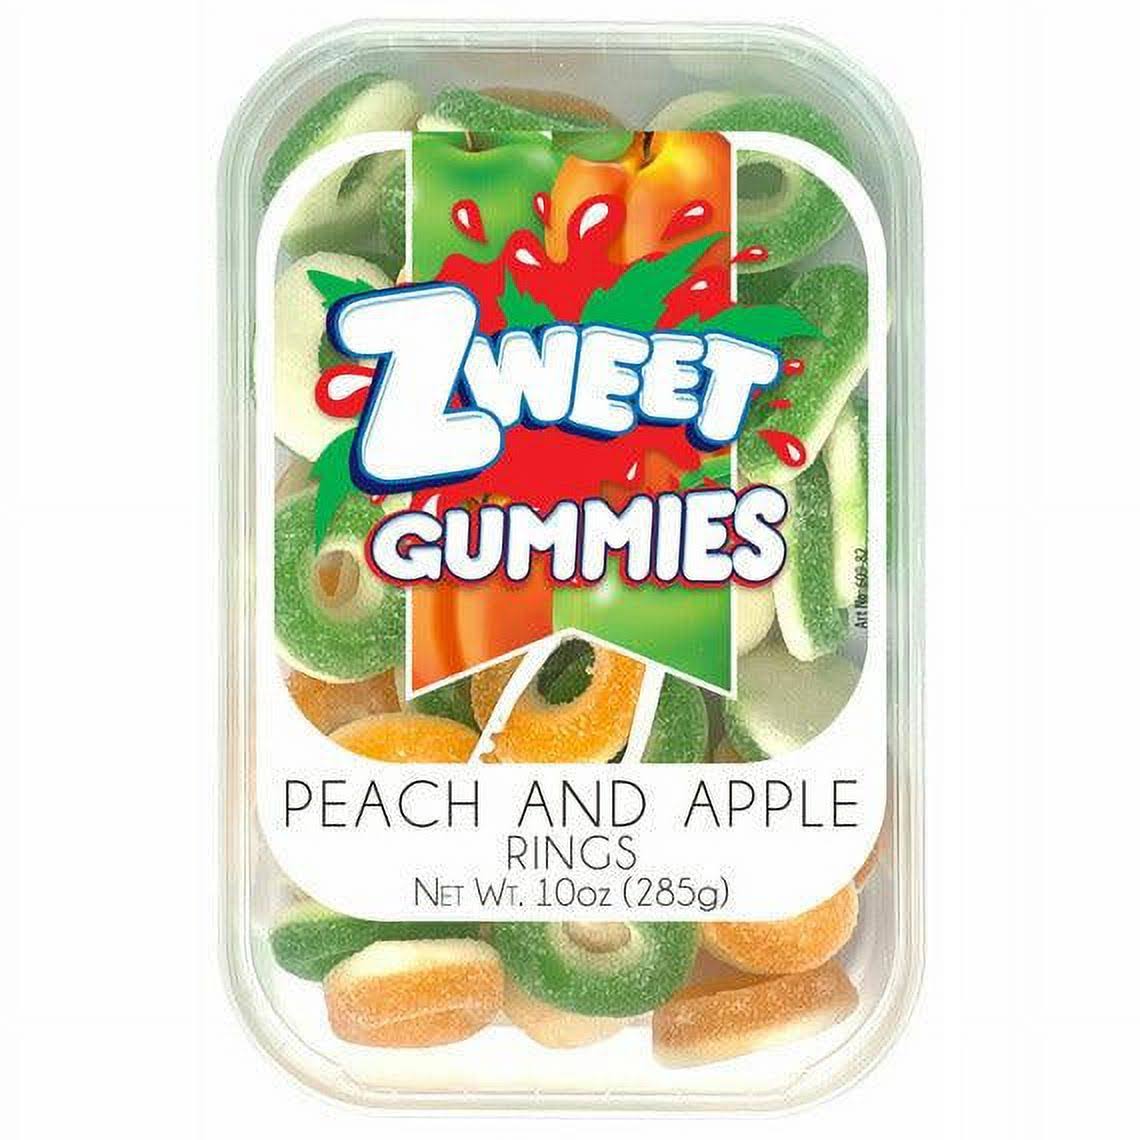 Zweet Gummies Peach and Apple Rings 10 oz. Tub